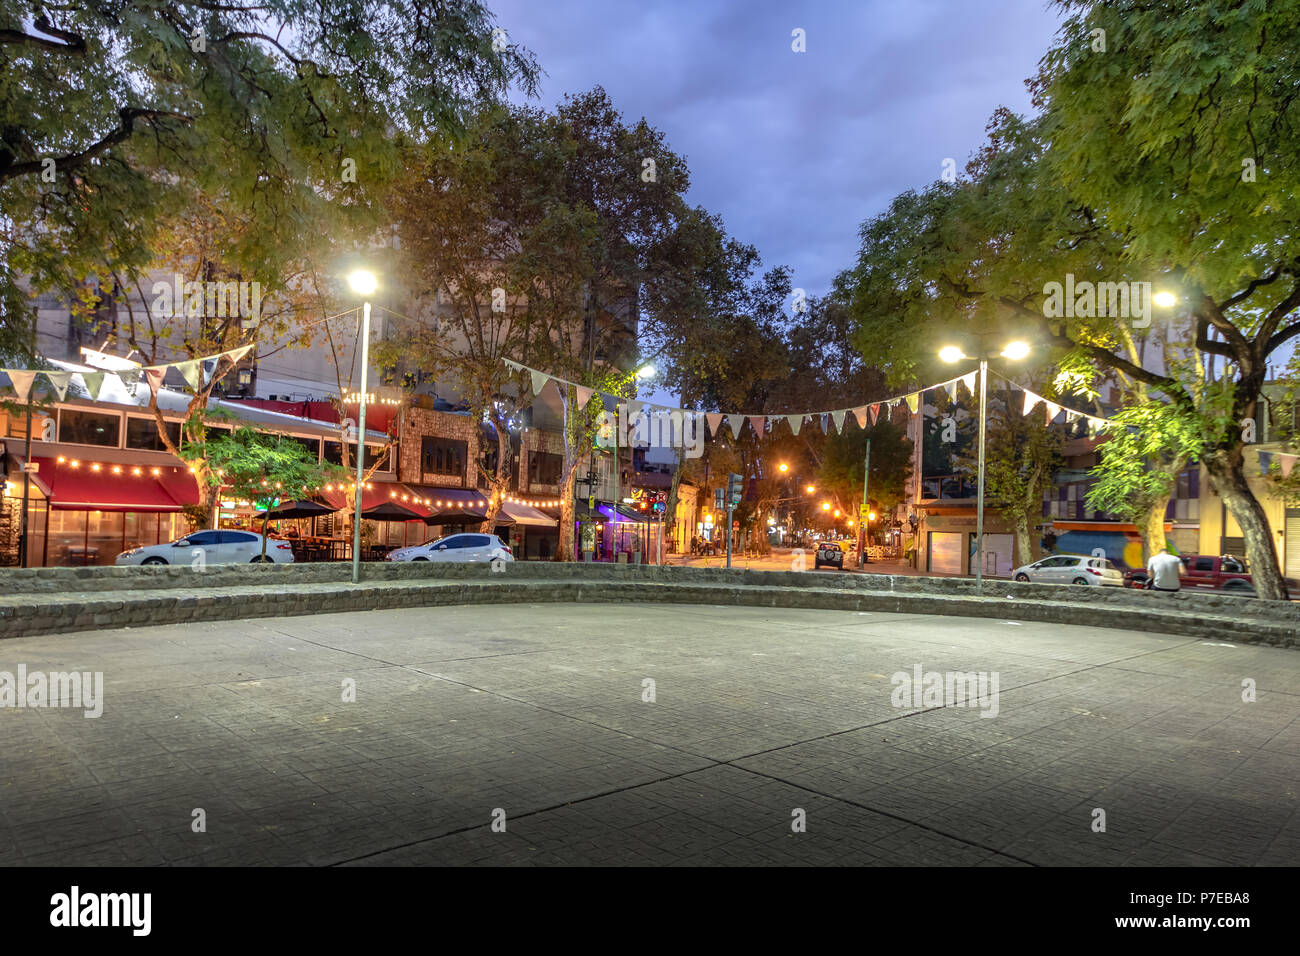 Plaza Serrano in Palermo Soho at night - Buenos Aires, Argentina Stock Photo